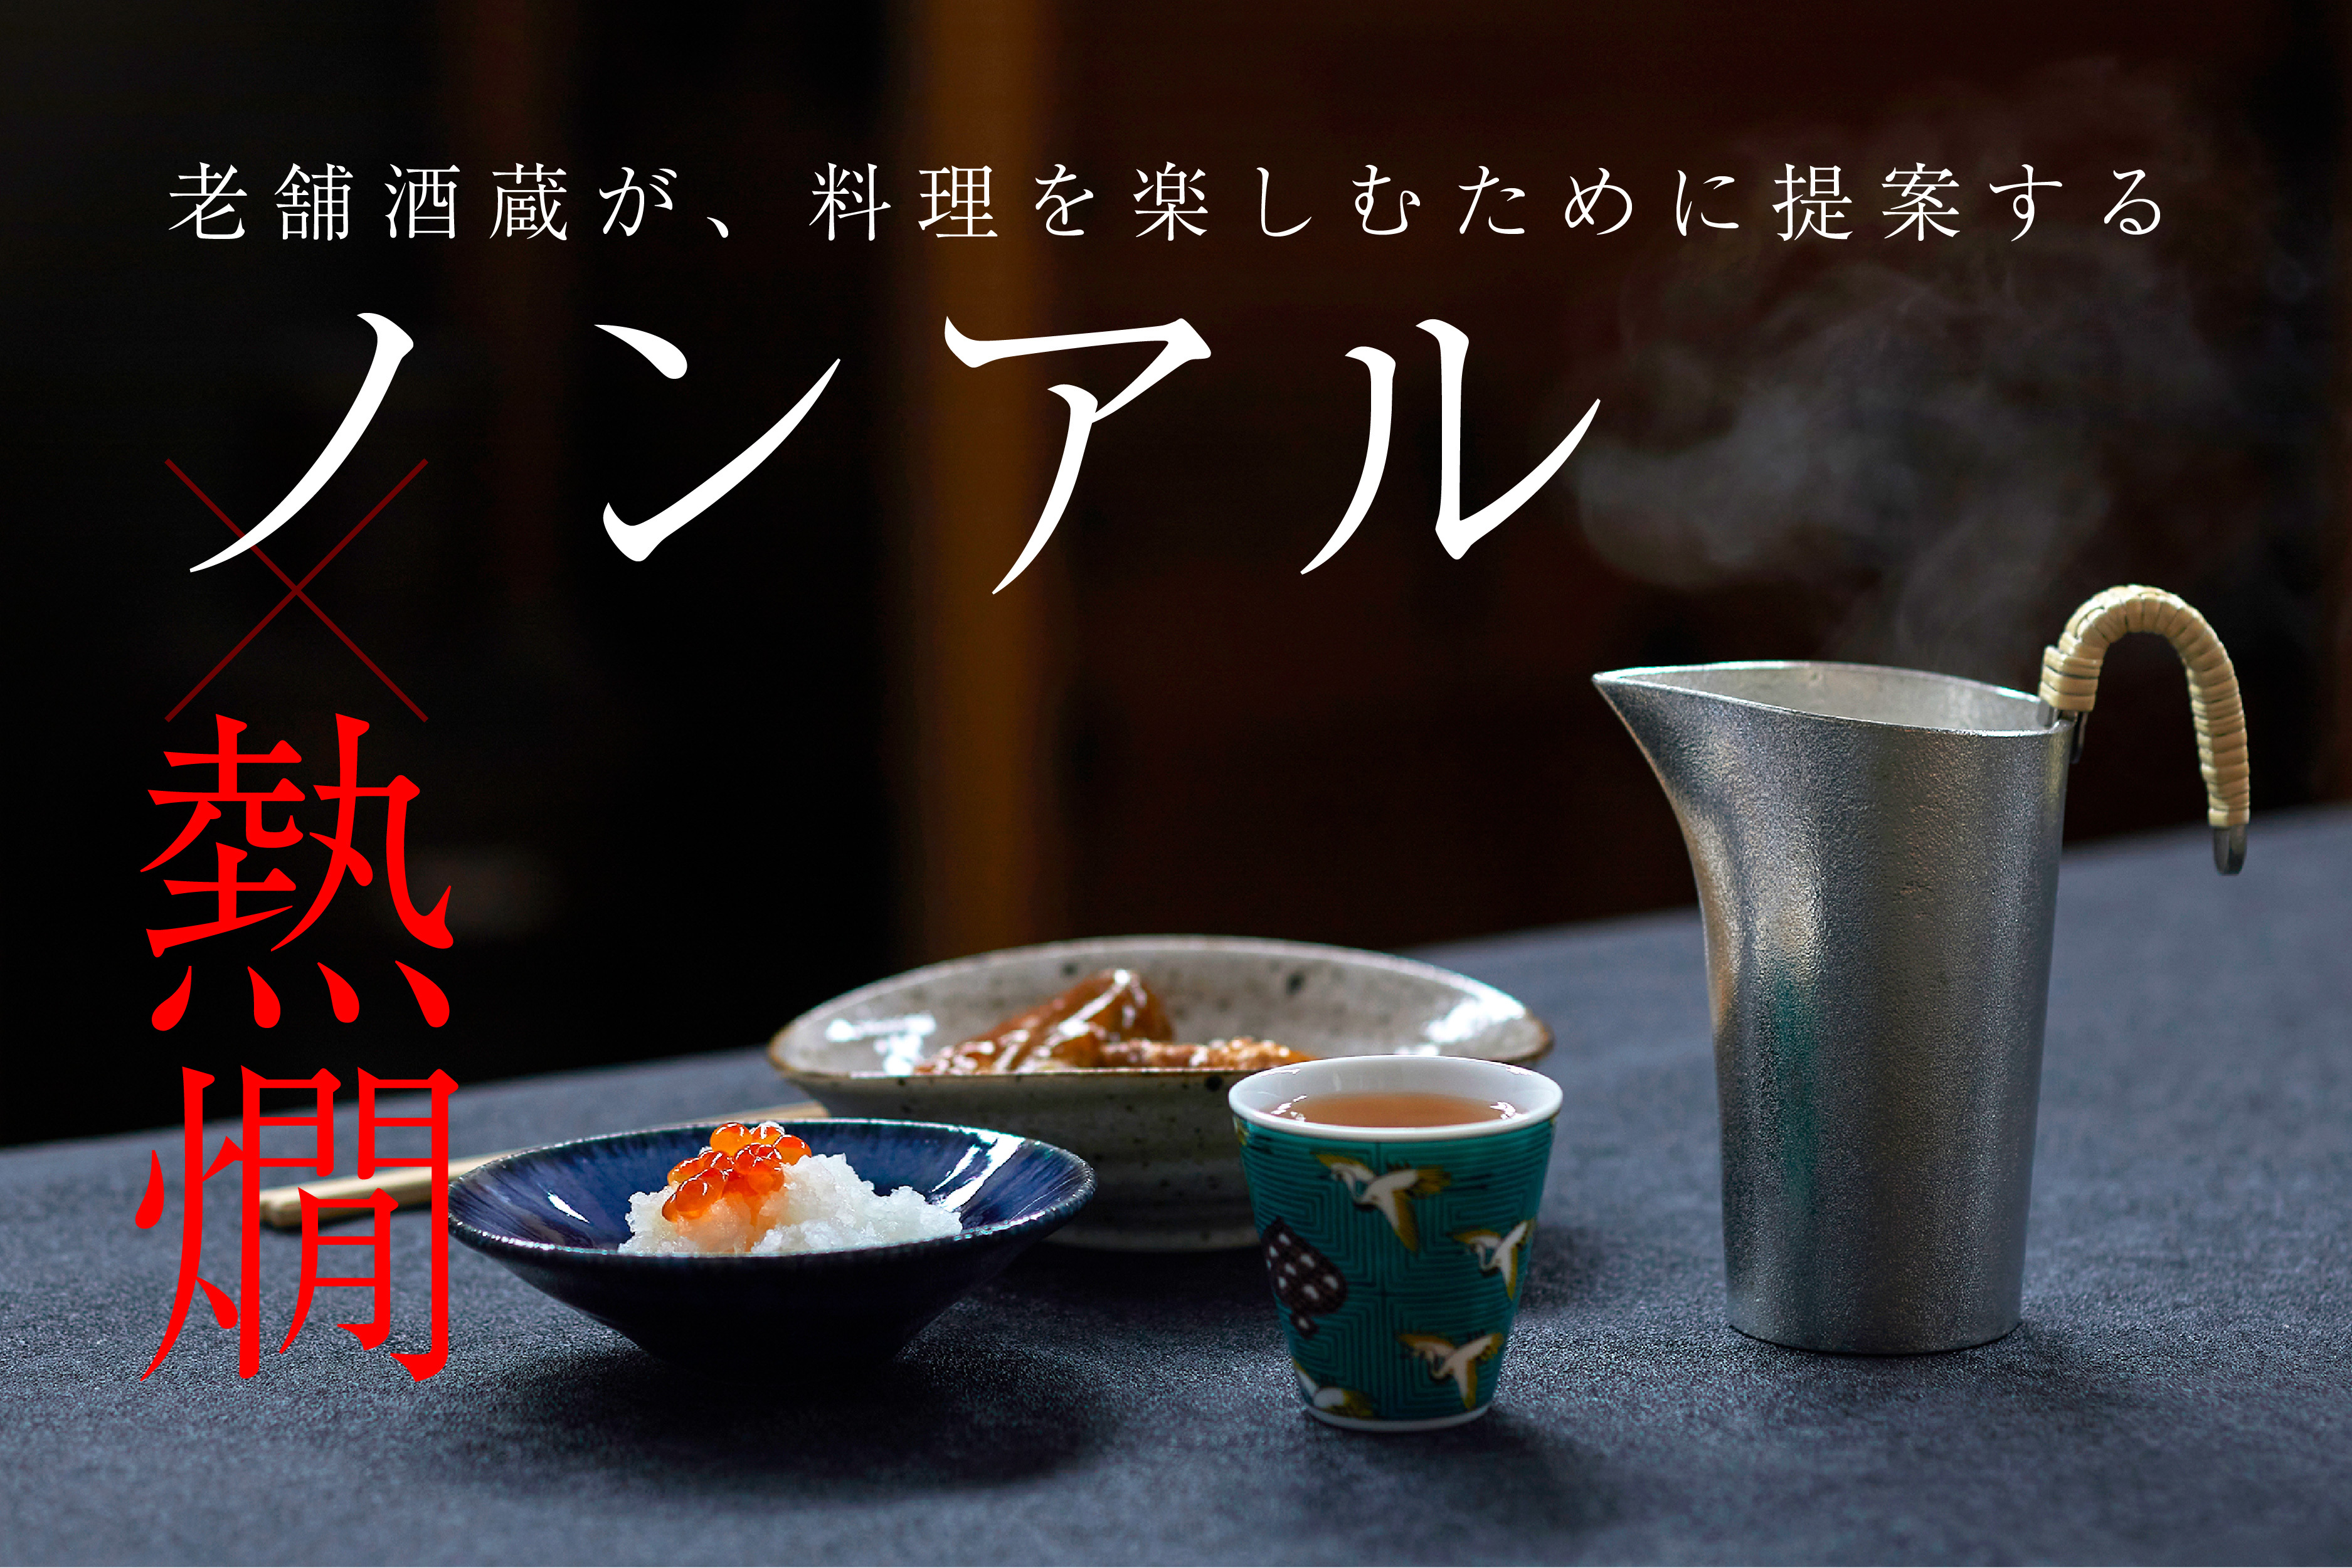 ノンアルで熱燗？！酒蔵が提案する、
料理を楽しむためのノンアル「玄米茶88」の第二弾が
Makuakeで販売開始